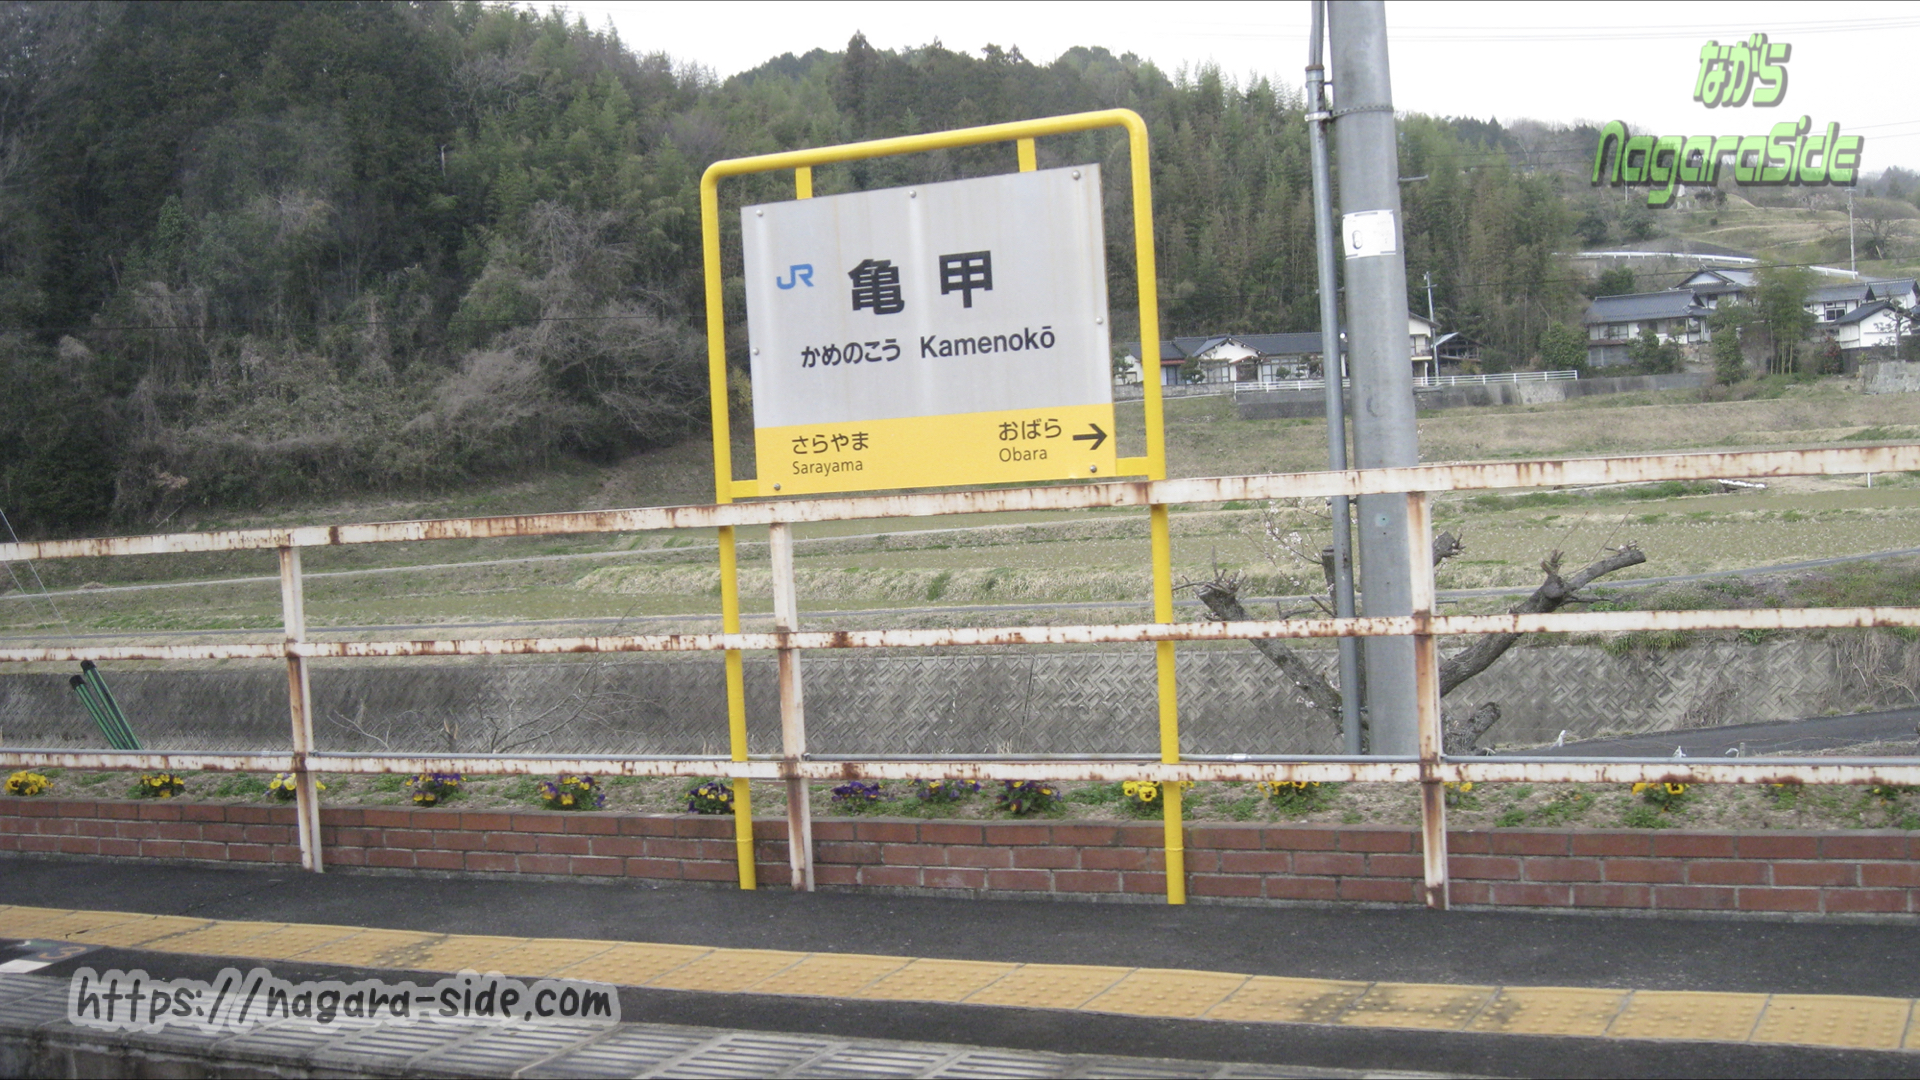 津山線の特徴的な駅の一つ「亀甲駅」